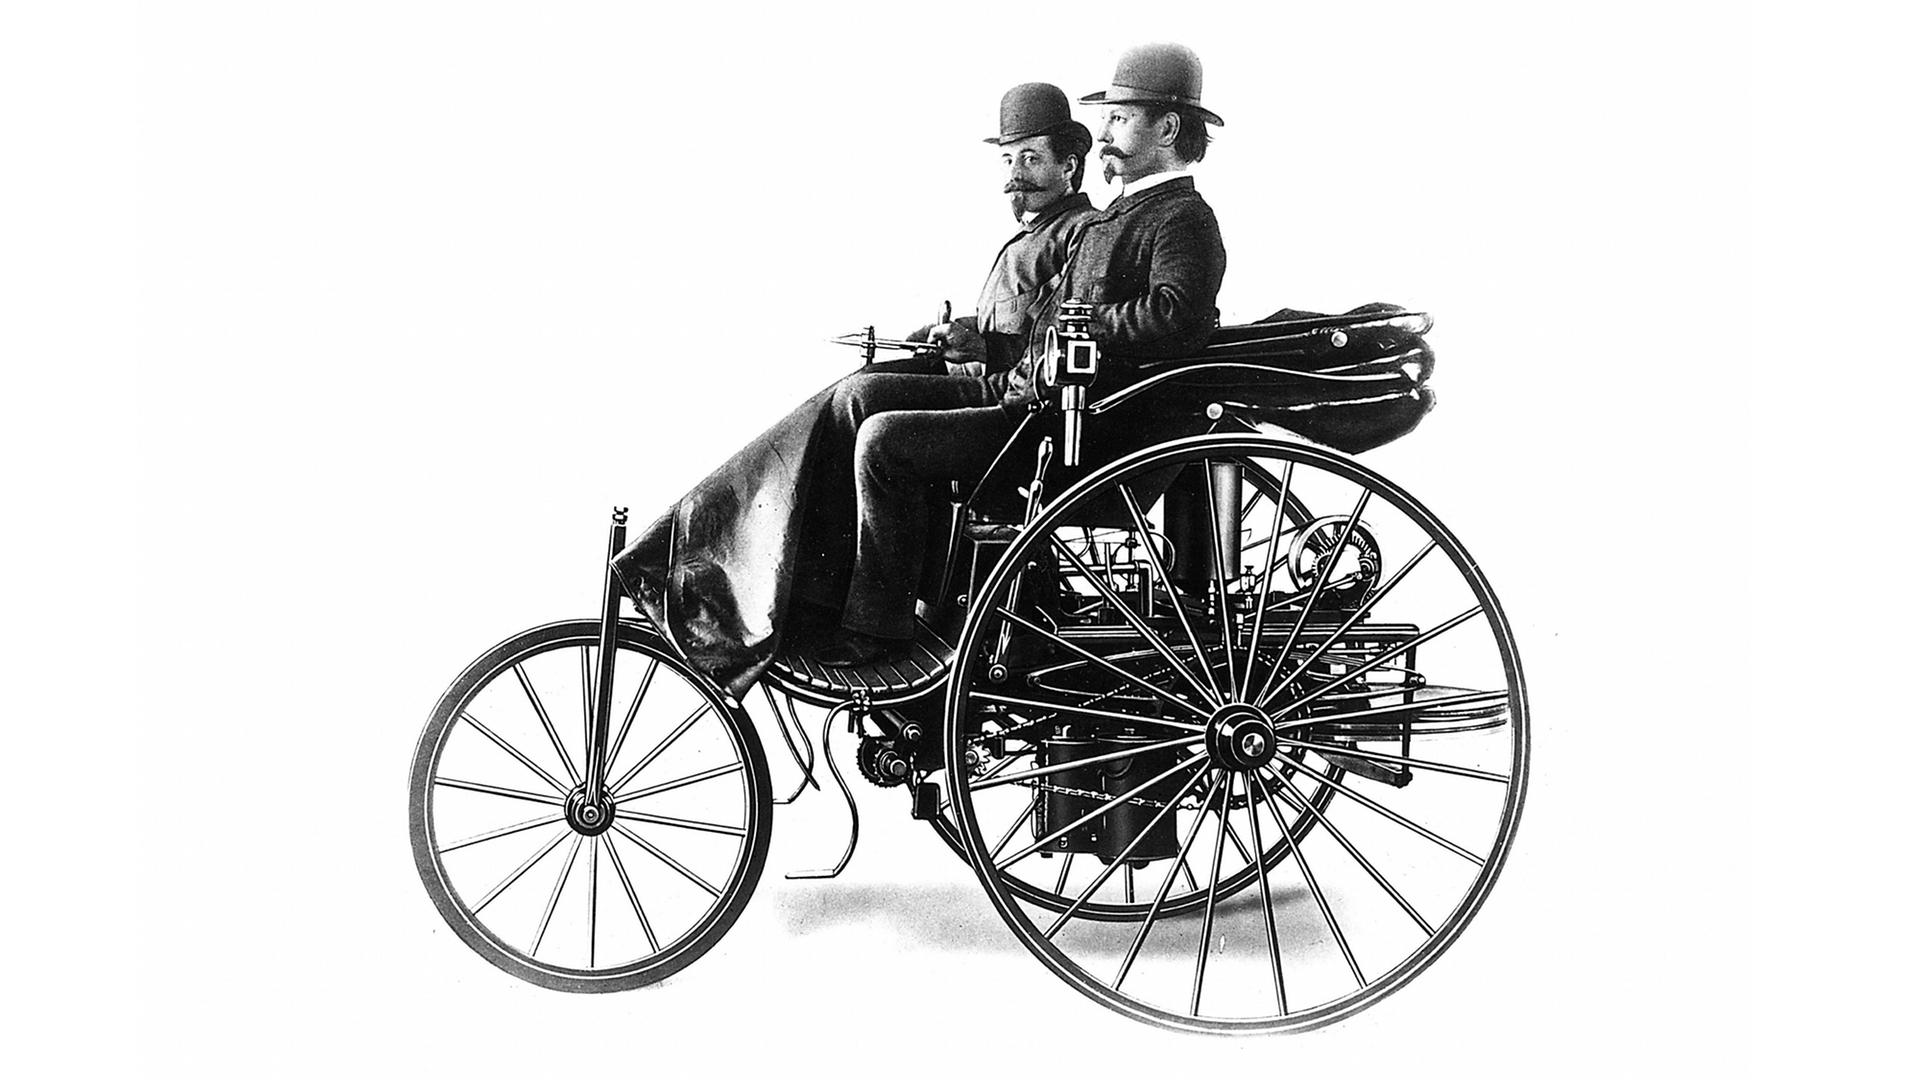 Historische Fotografie: Der Erfinder des Automobils, Carl Benz in seinem dreirädrigen Vehikel mit Verbrennungsmotor aus dem Jahr 1886